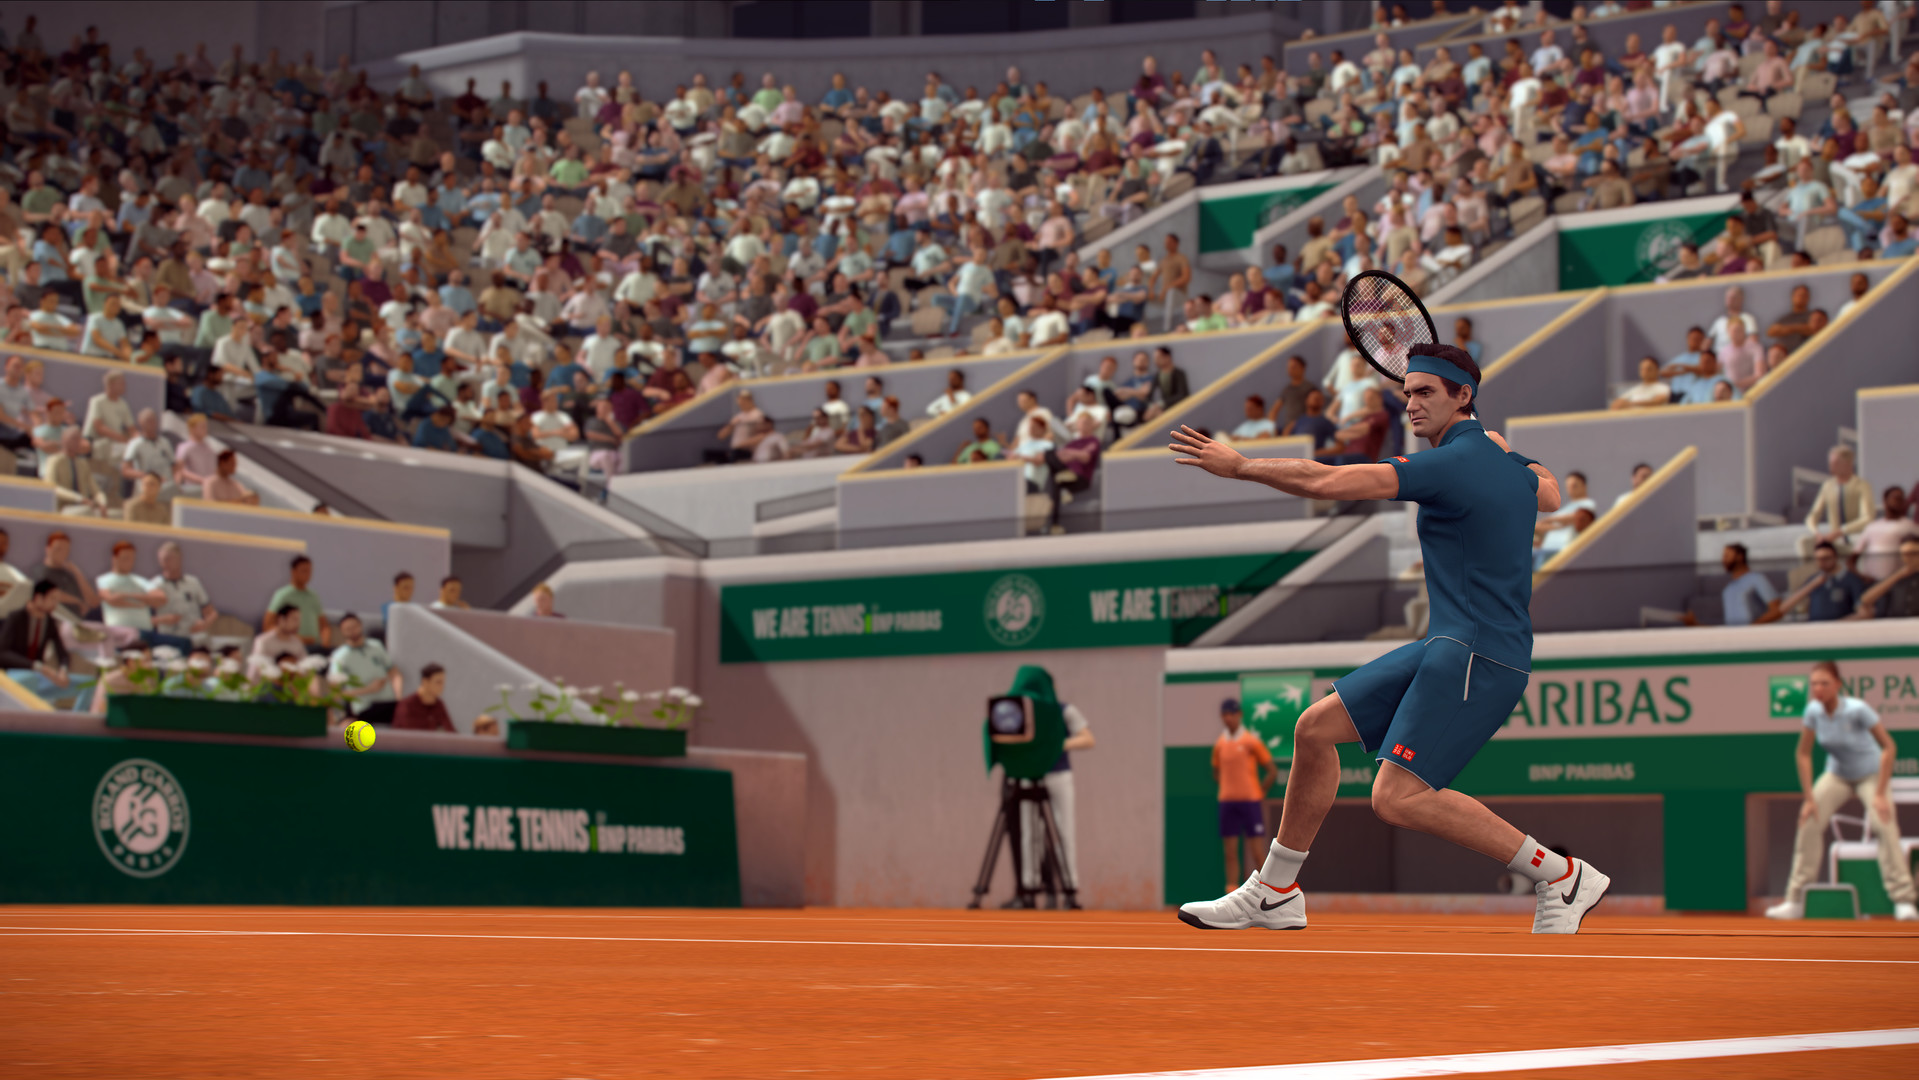 Tennis World Tour - Stadium Pack Featured Screenshot #1